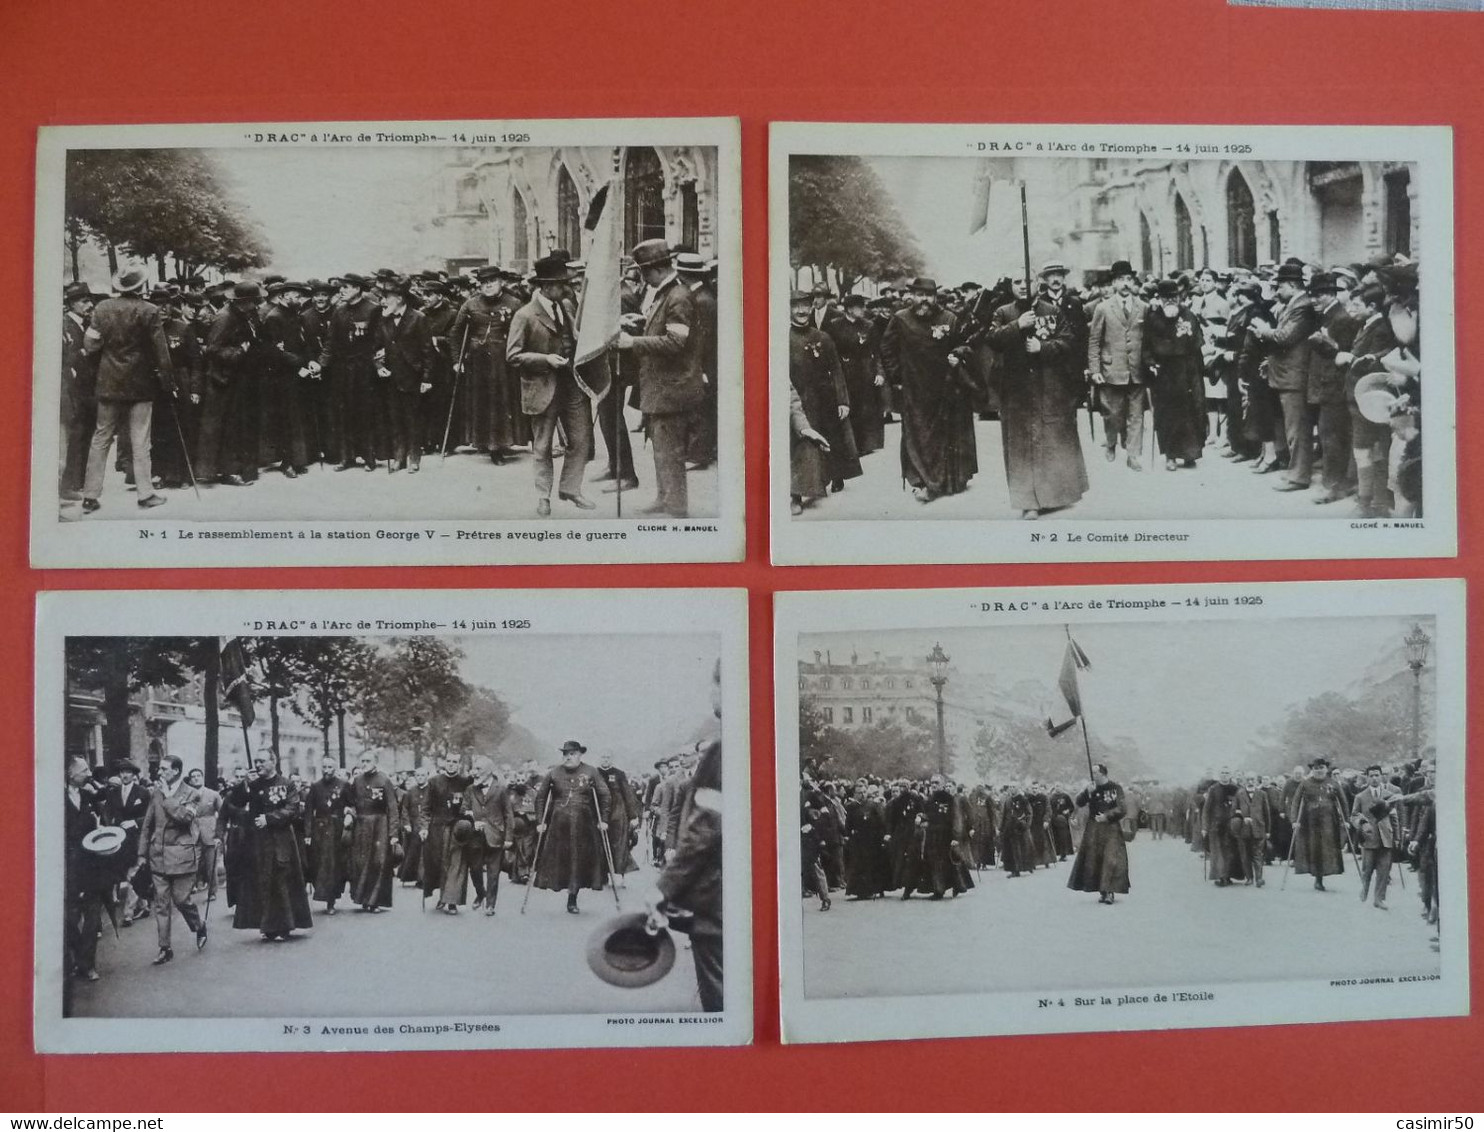 DRAC A L'ARC DE TRIOMPHE  14 JUIN 1925 - Demonstrations